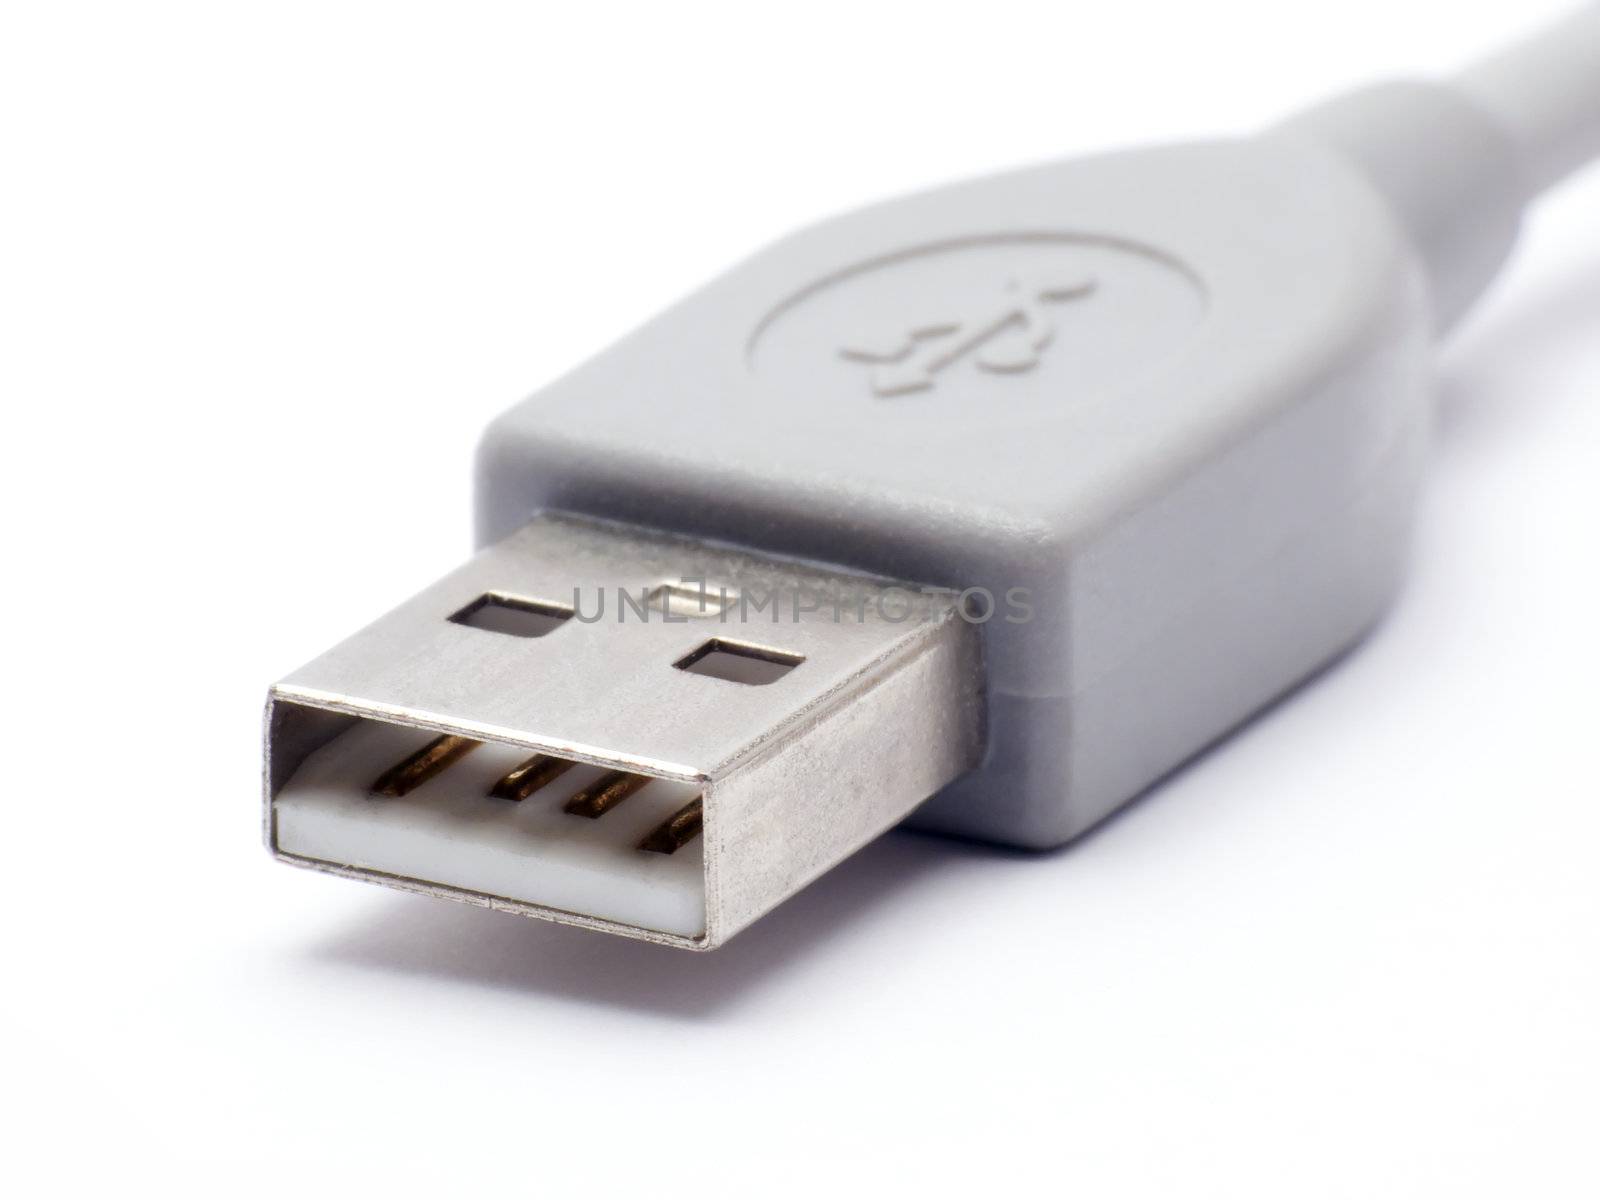 USB Connector by devulderj